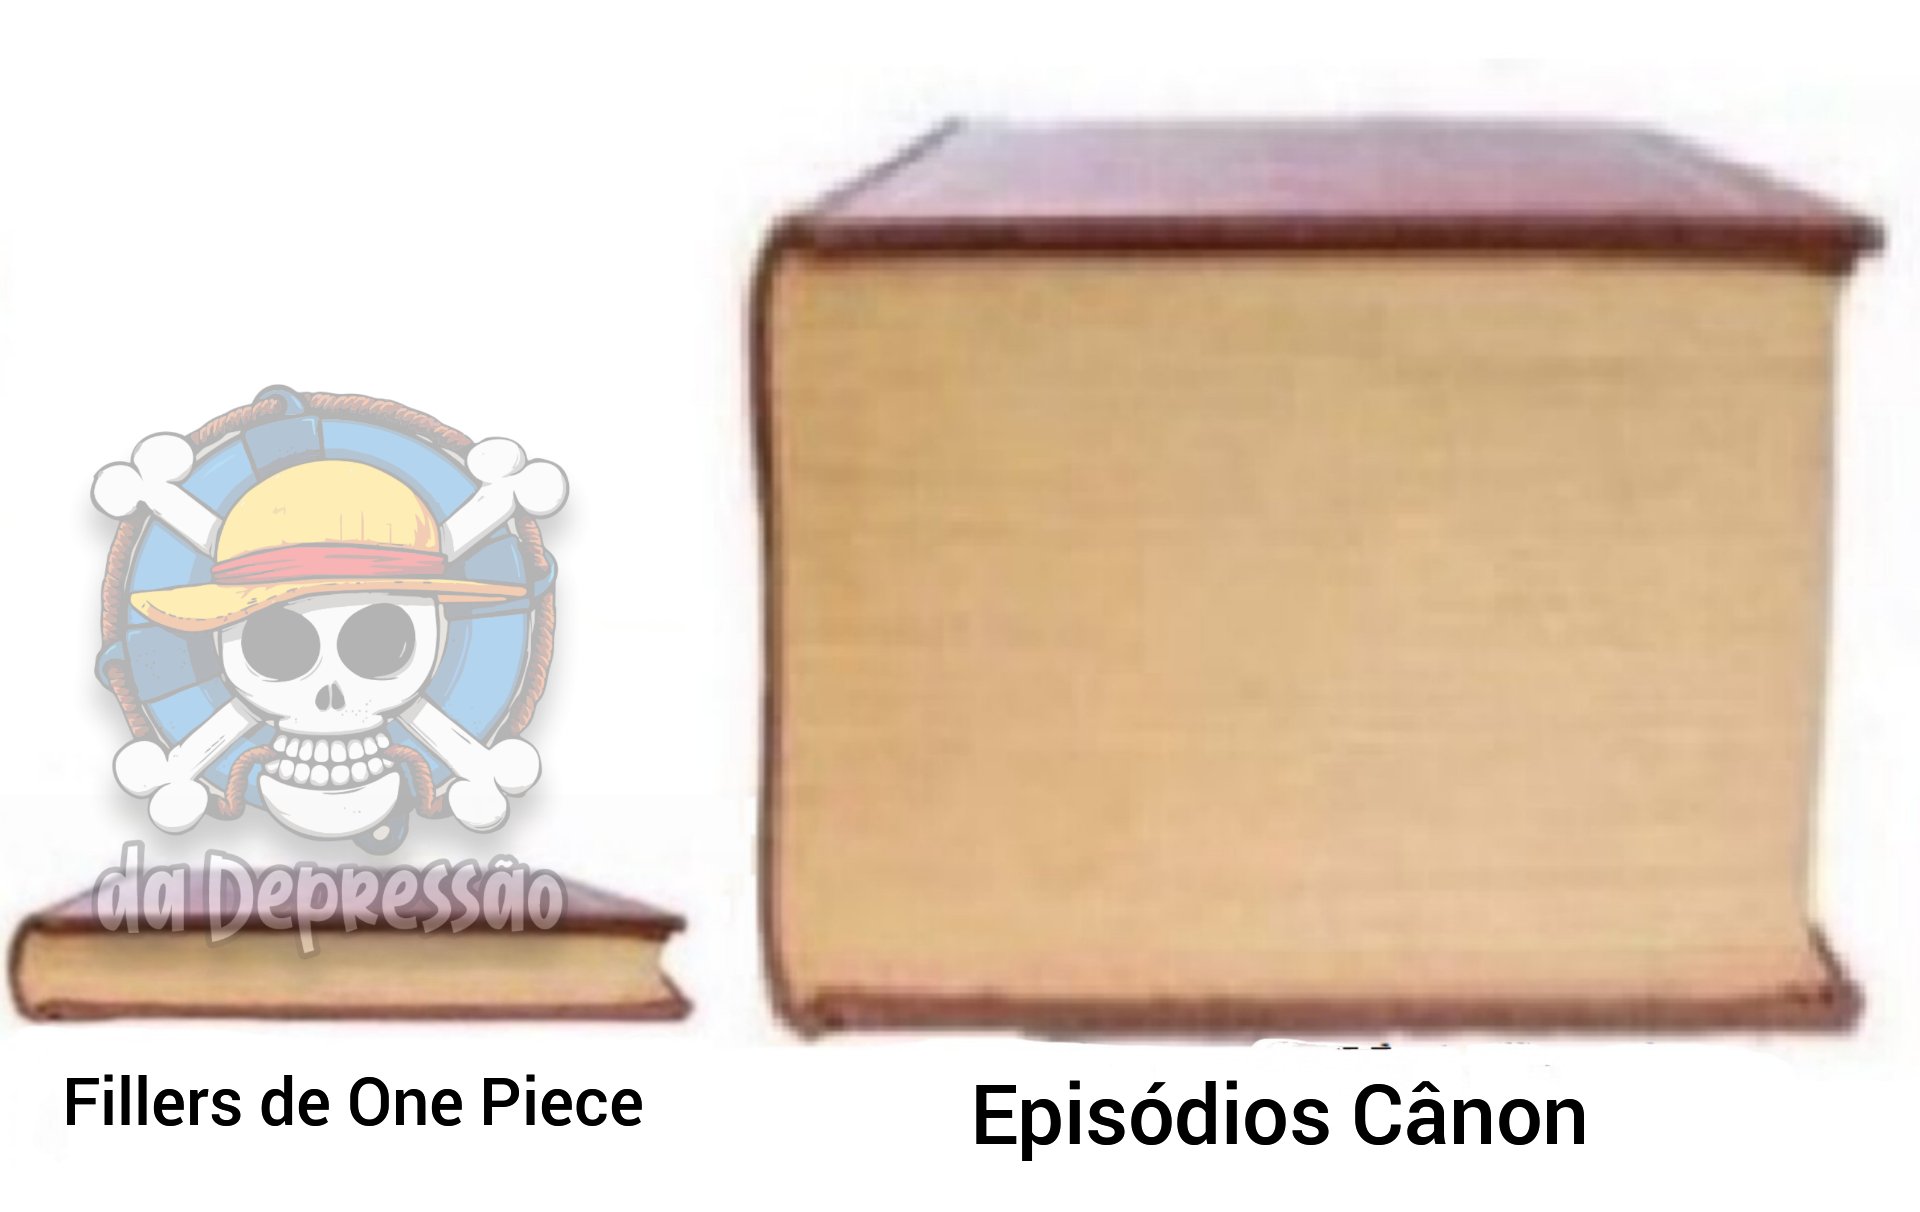 One Piece da Depre on X: Mas até os fillers são bons   / X